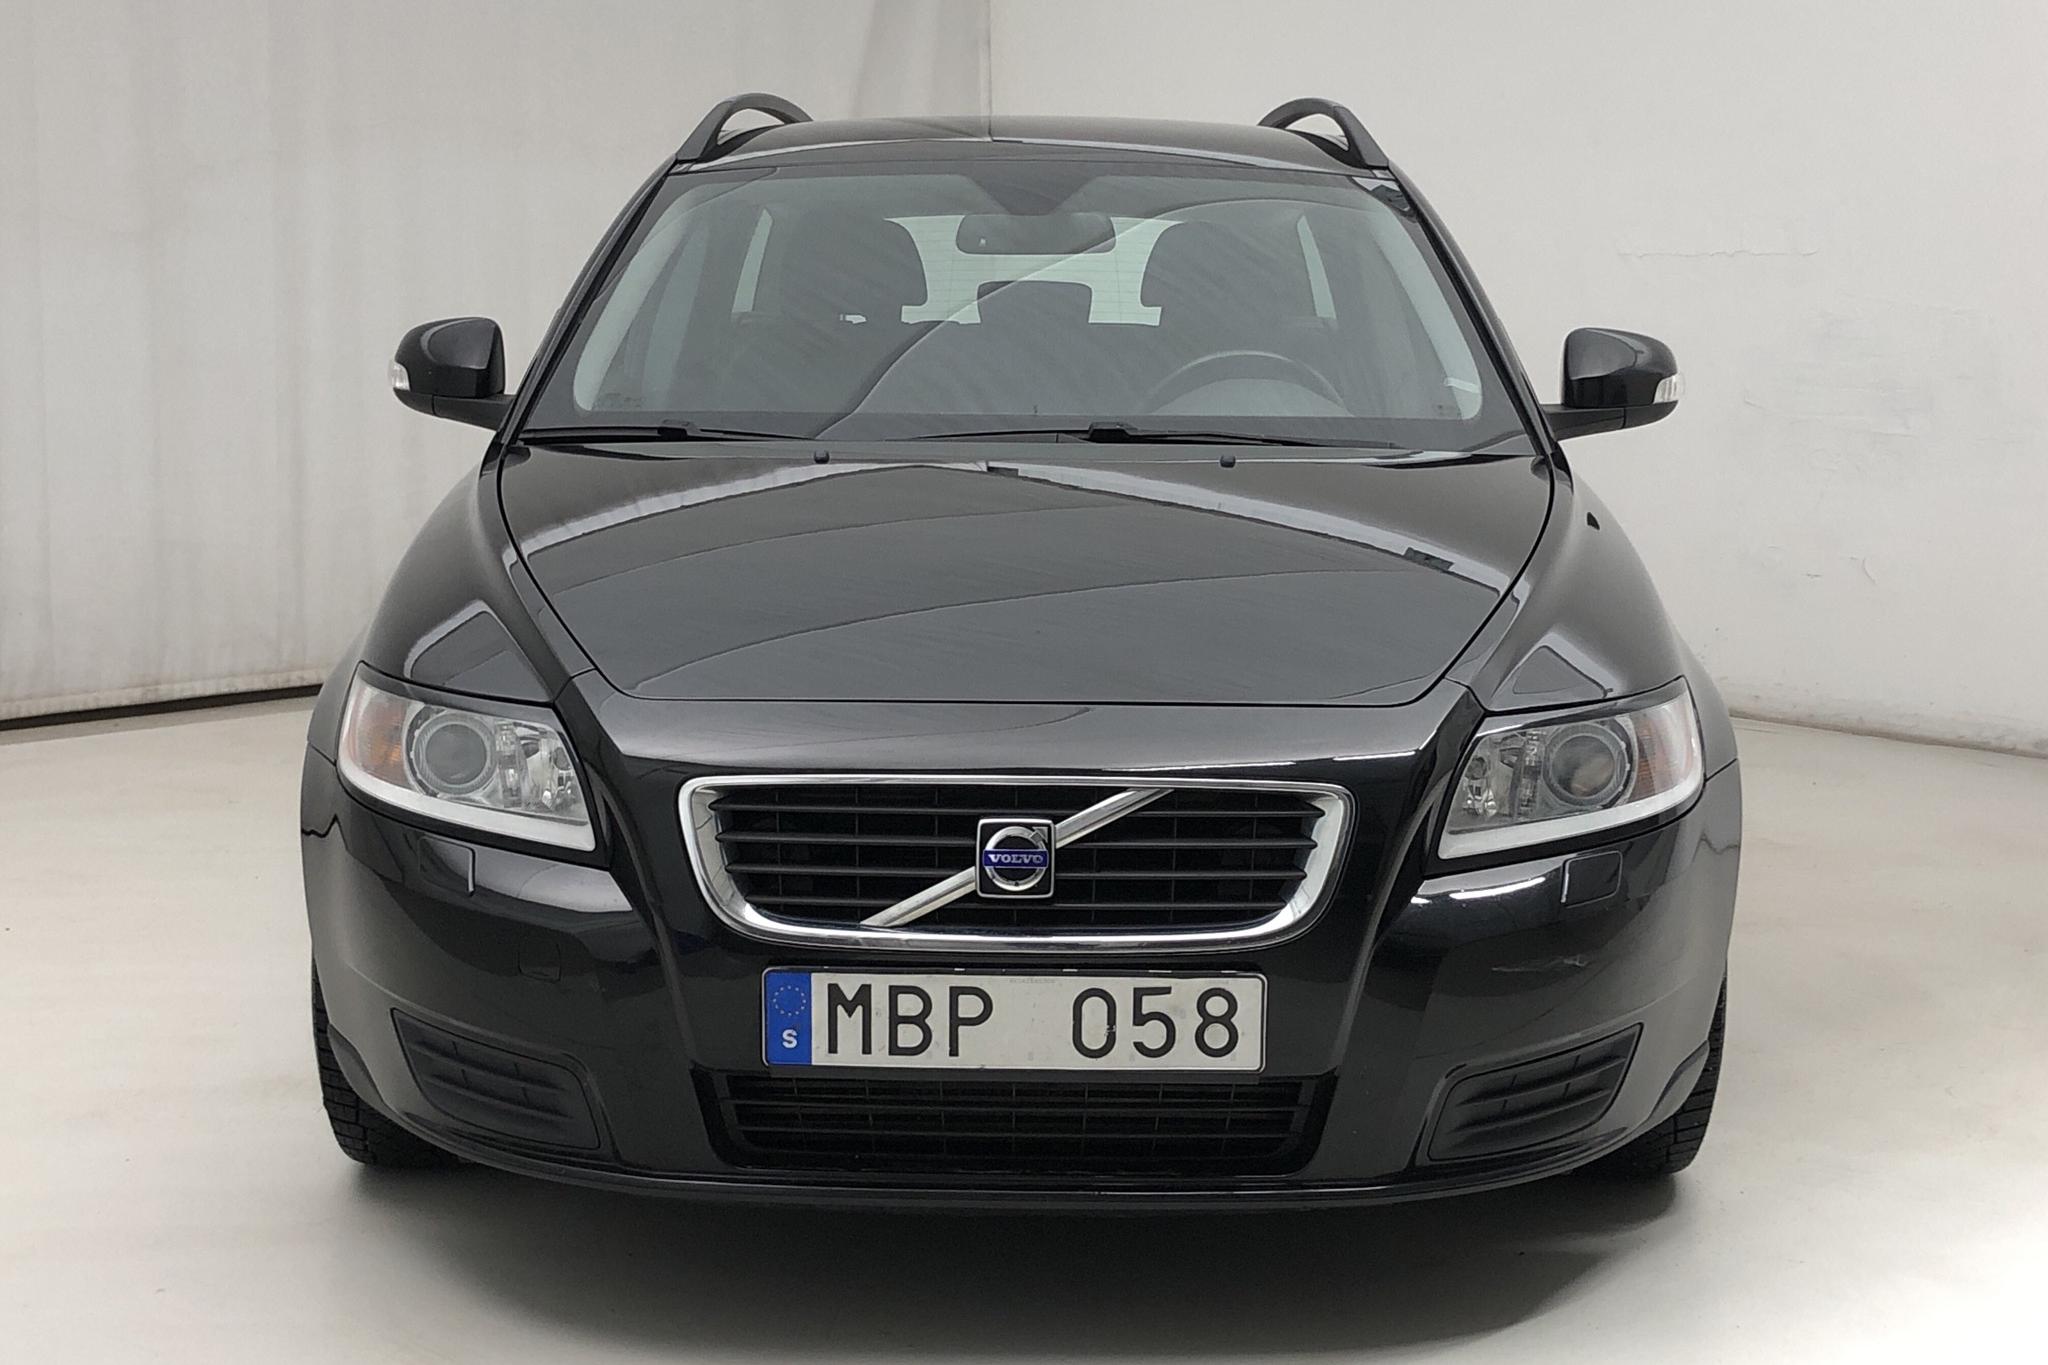 Volvo V50 1.6D DRIVe (109hk) - 155 000 km - Manual - black - 2010